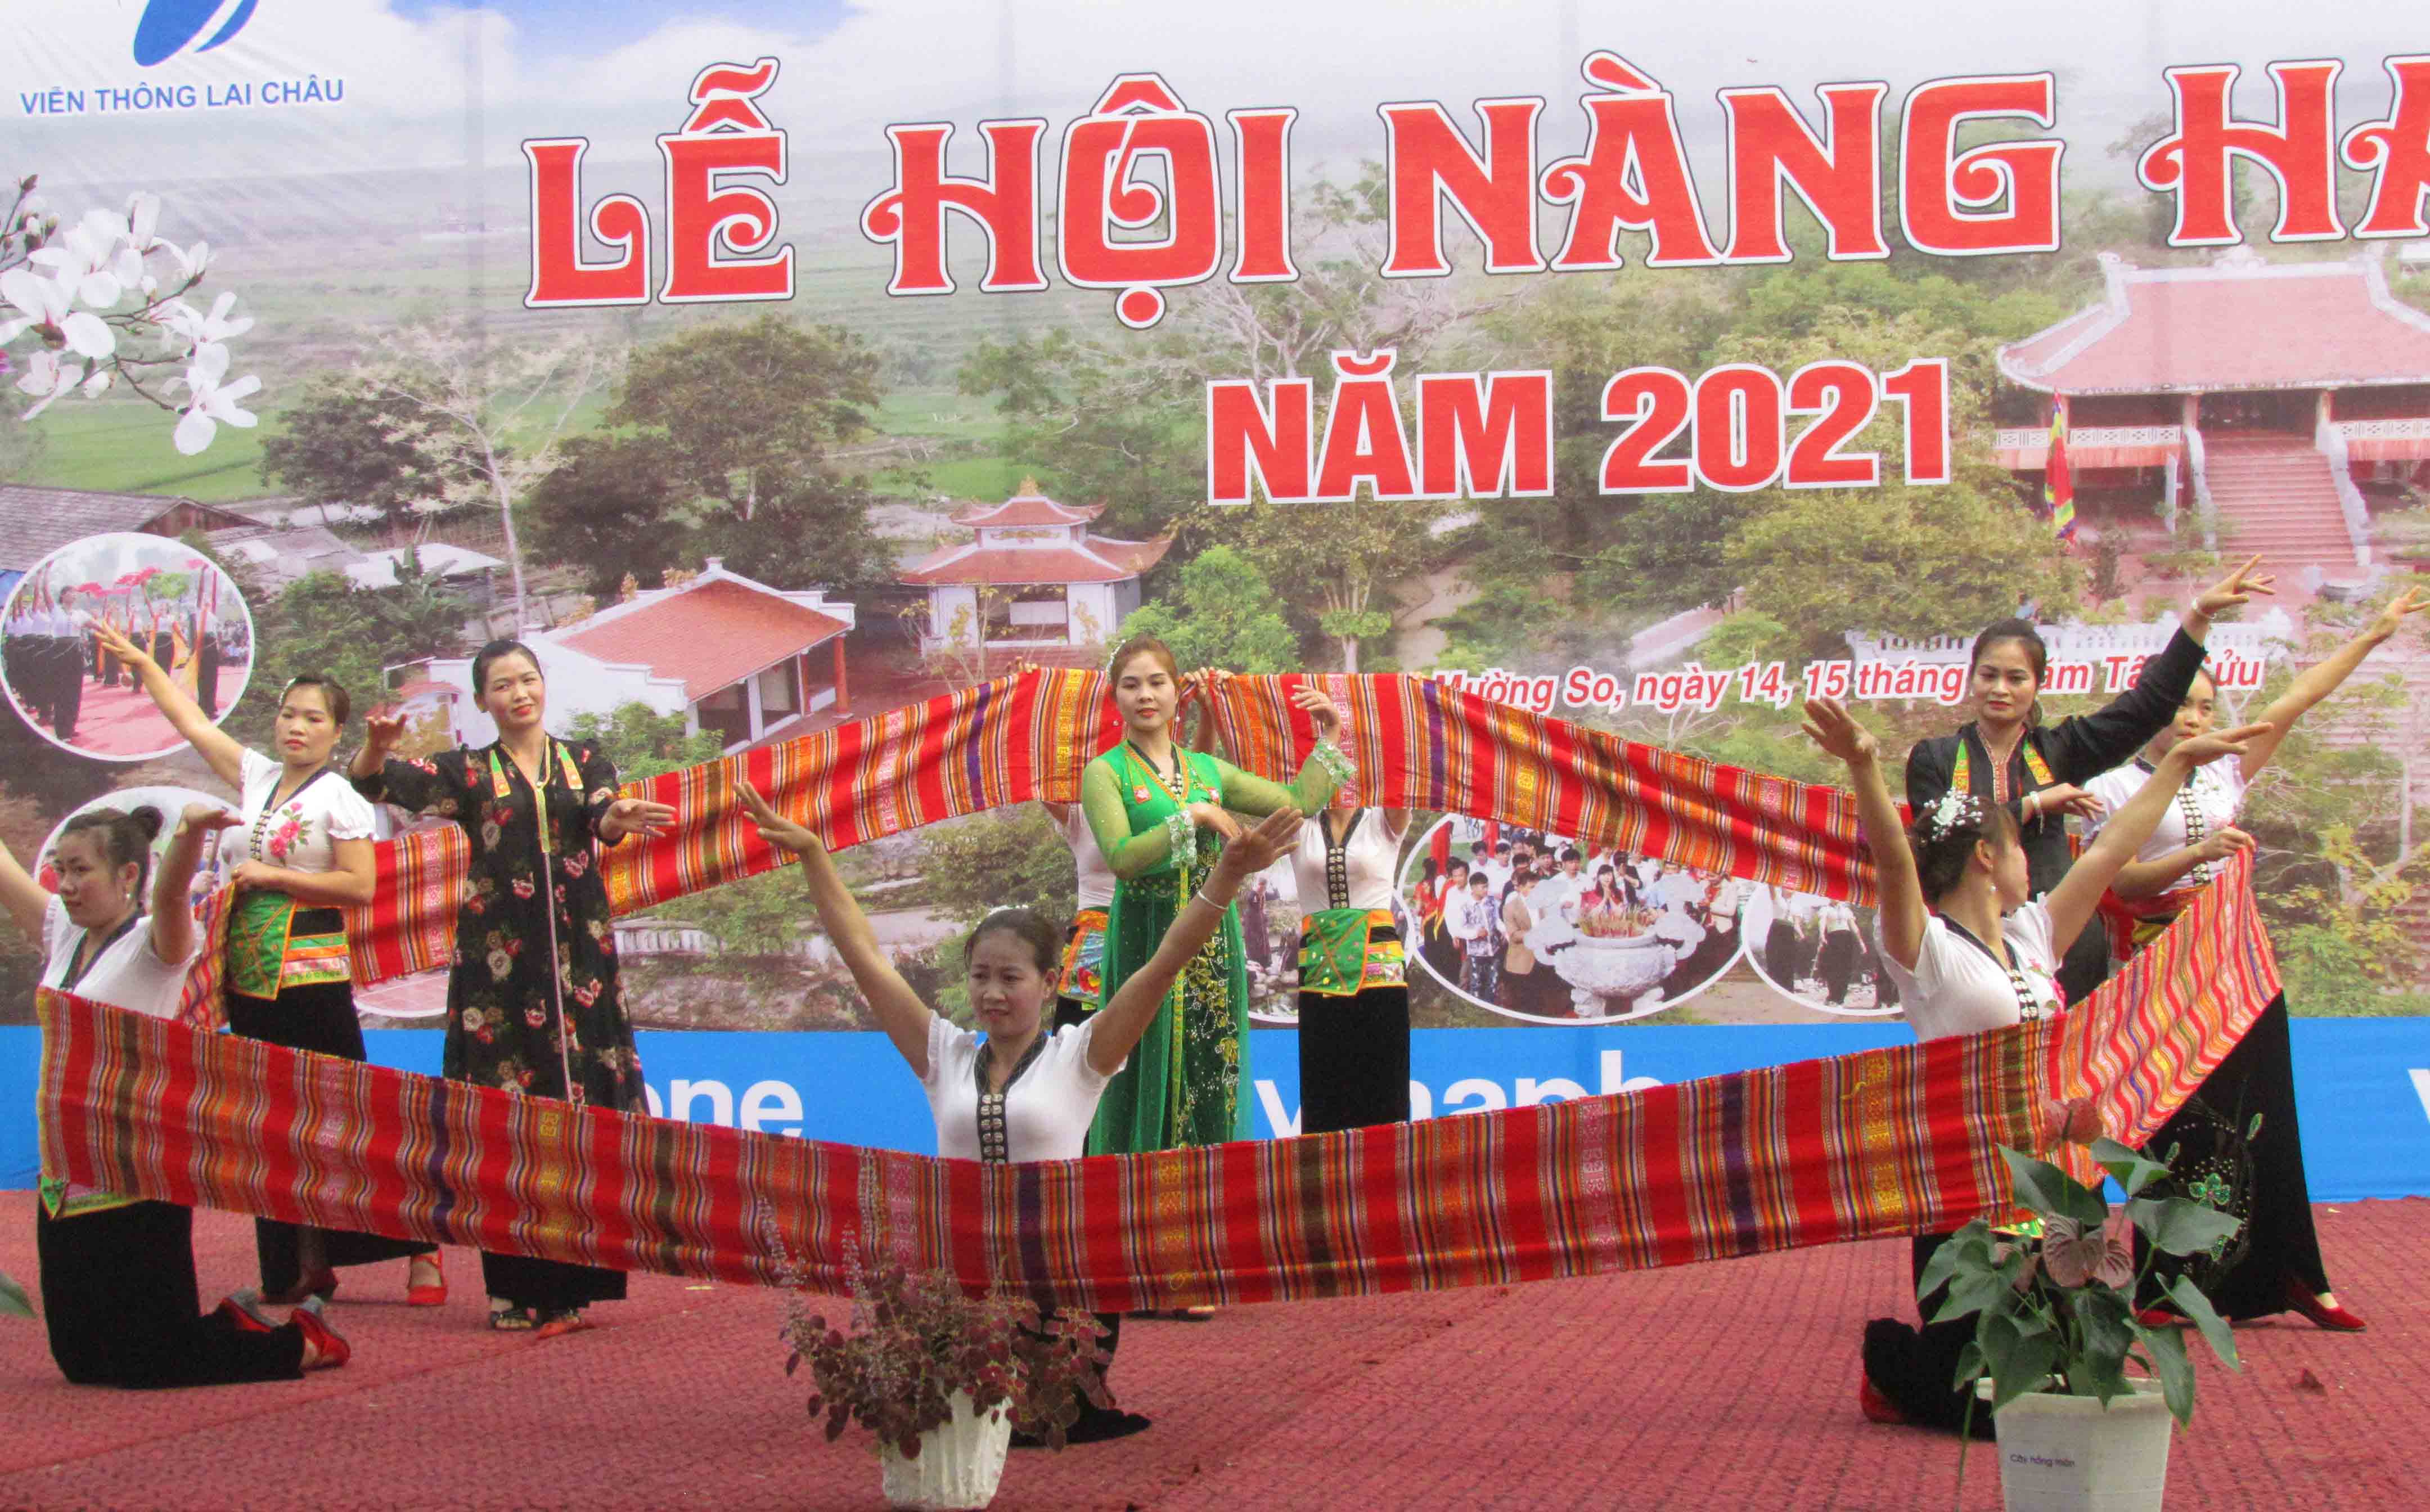 Lần đầu tiên tại Lễ hội Nàng Han có phần trình diễn trang phục truyền thống.